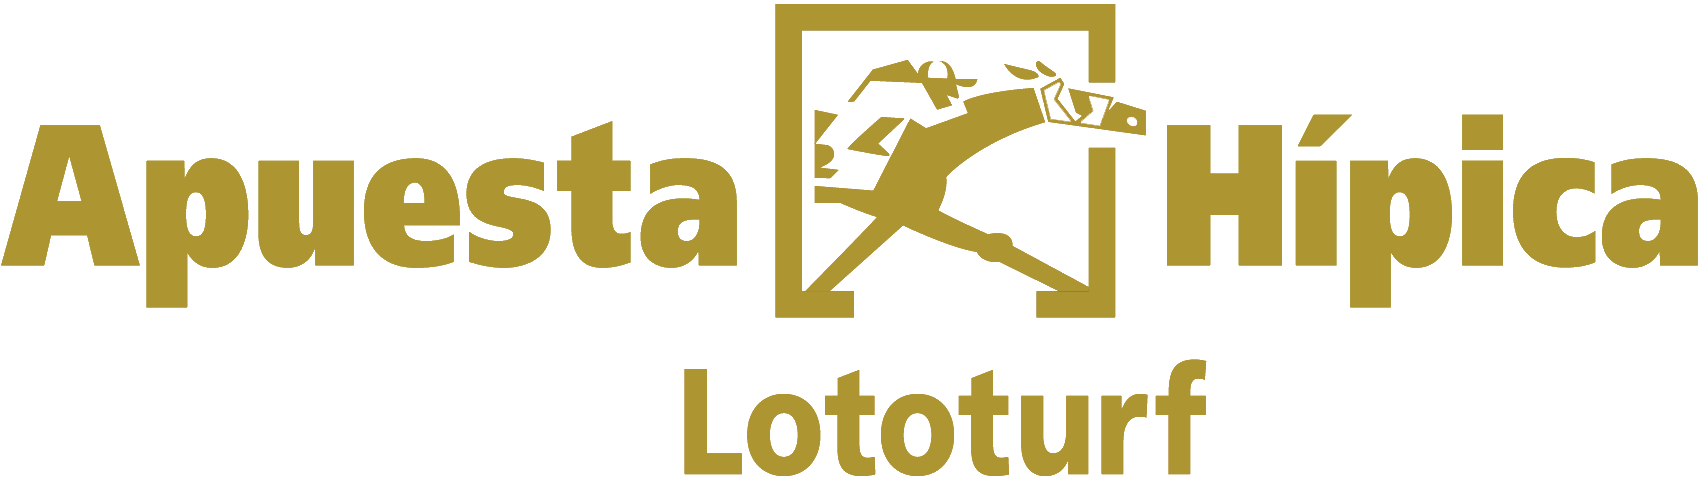 Lototurf